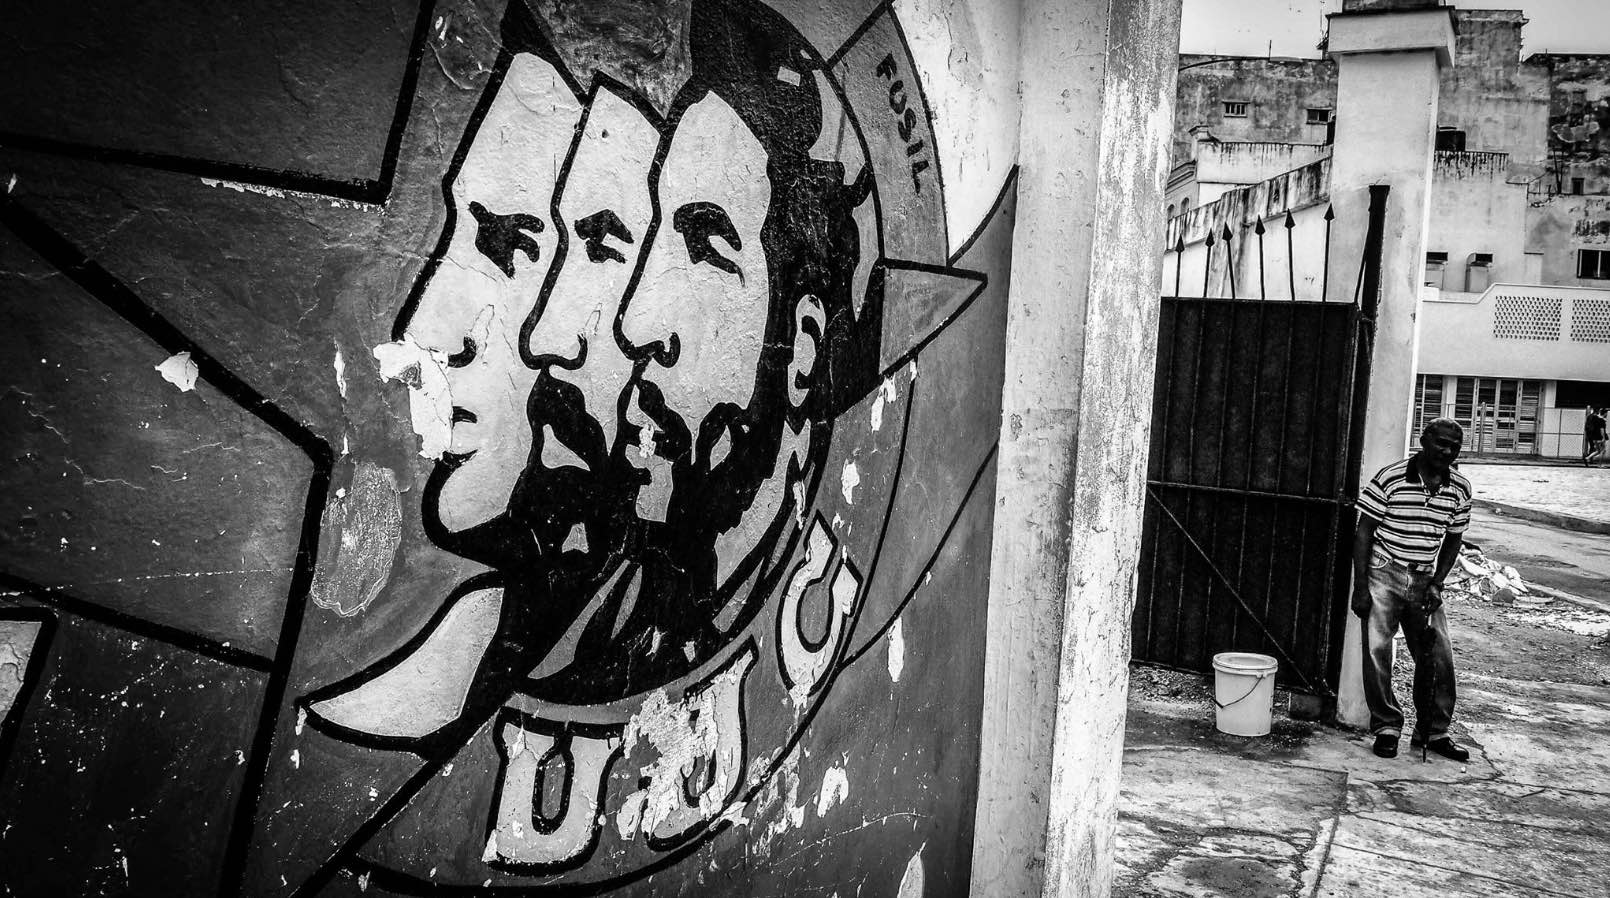 a mural painting of 3 men in Cuba